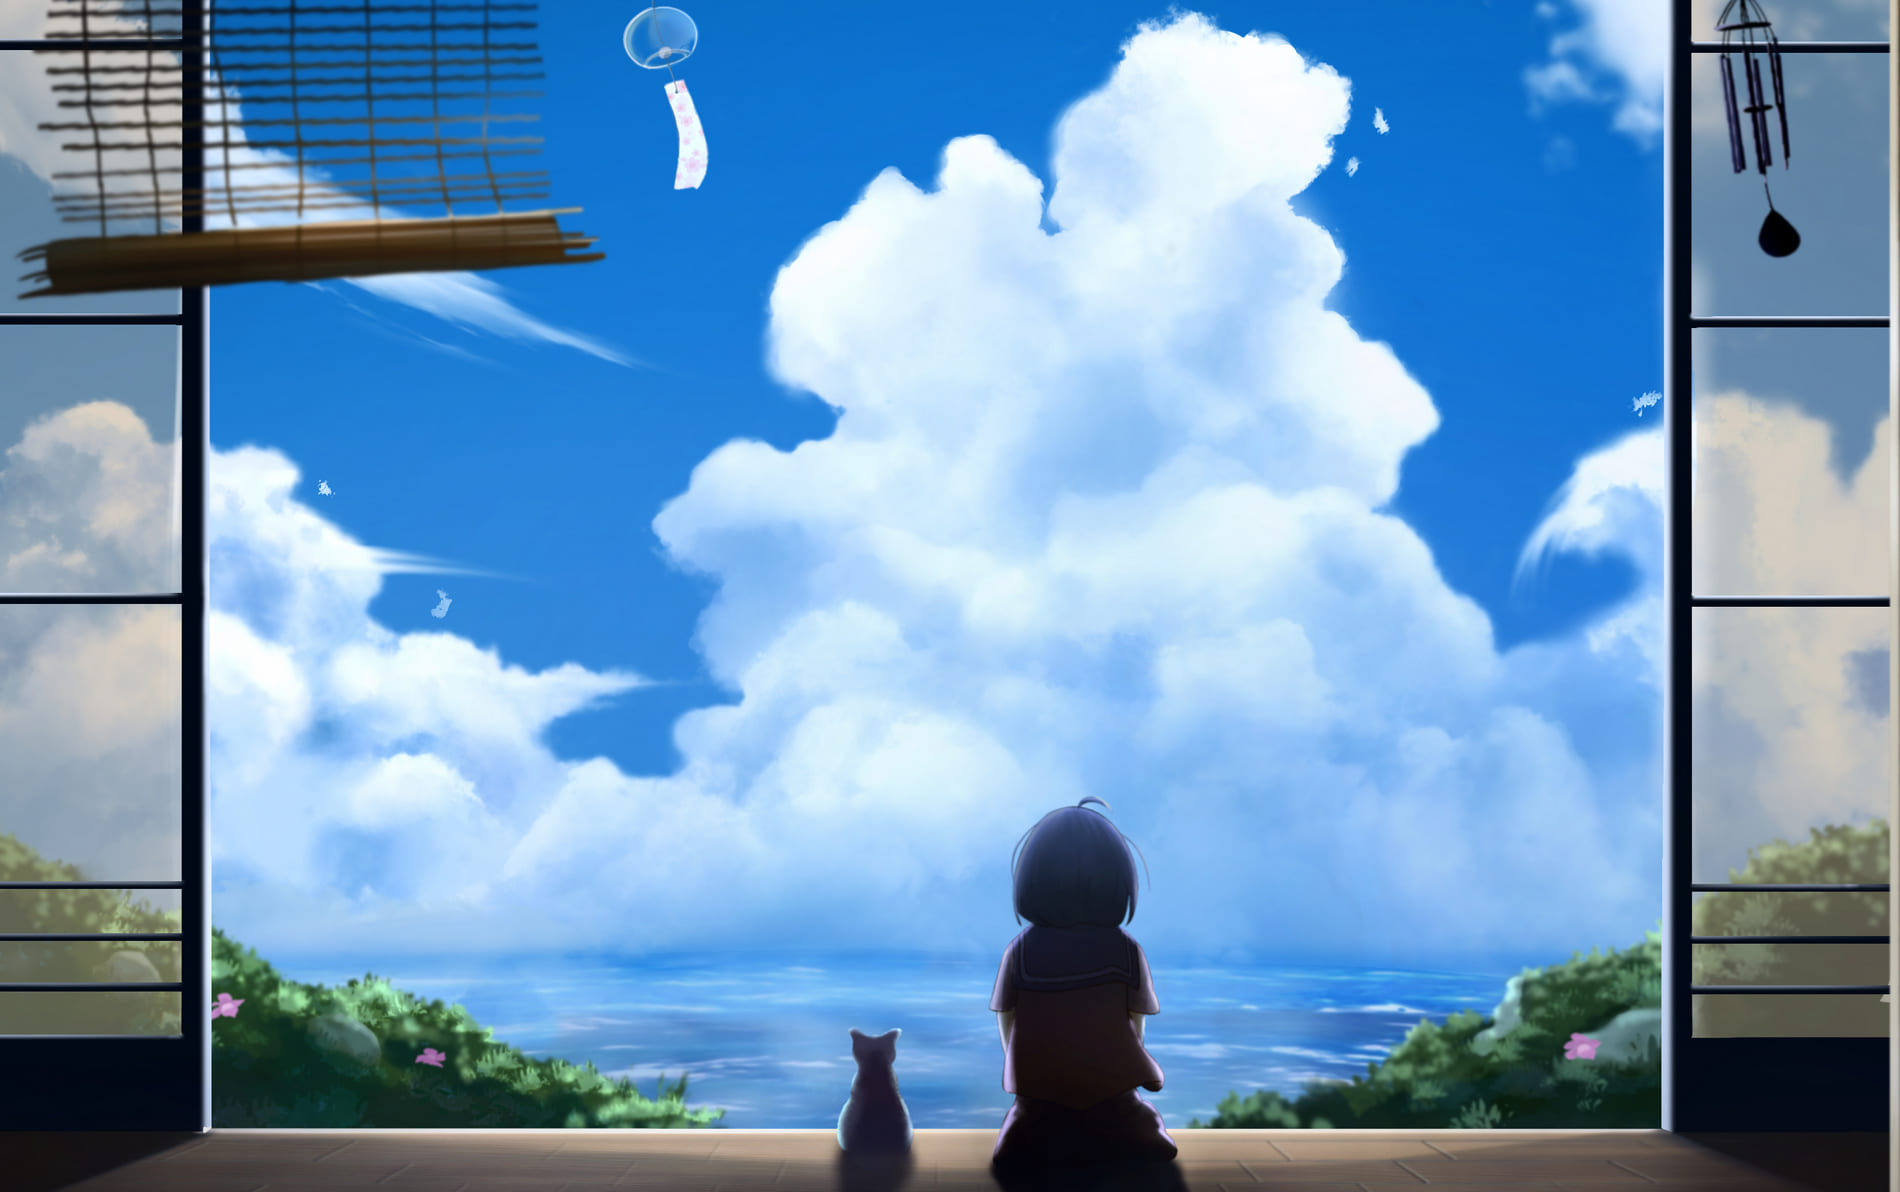 Anime Sky Image Image, background